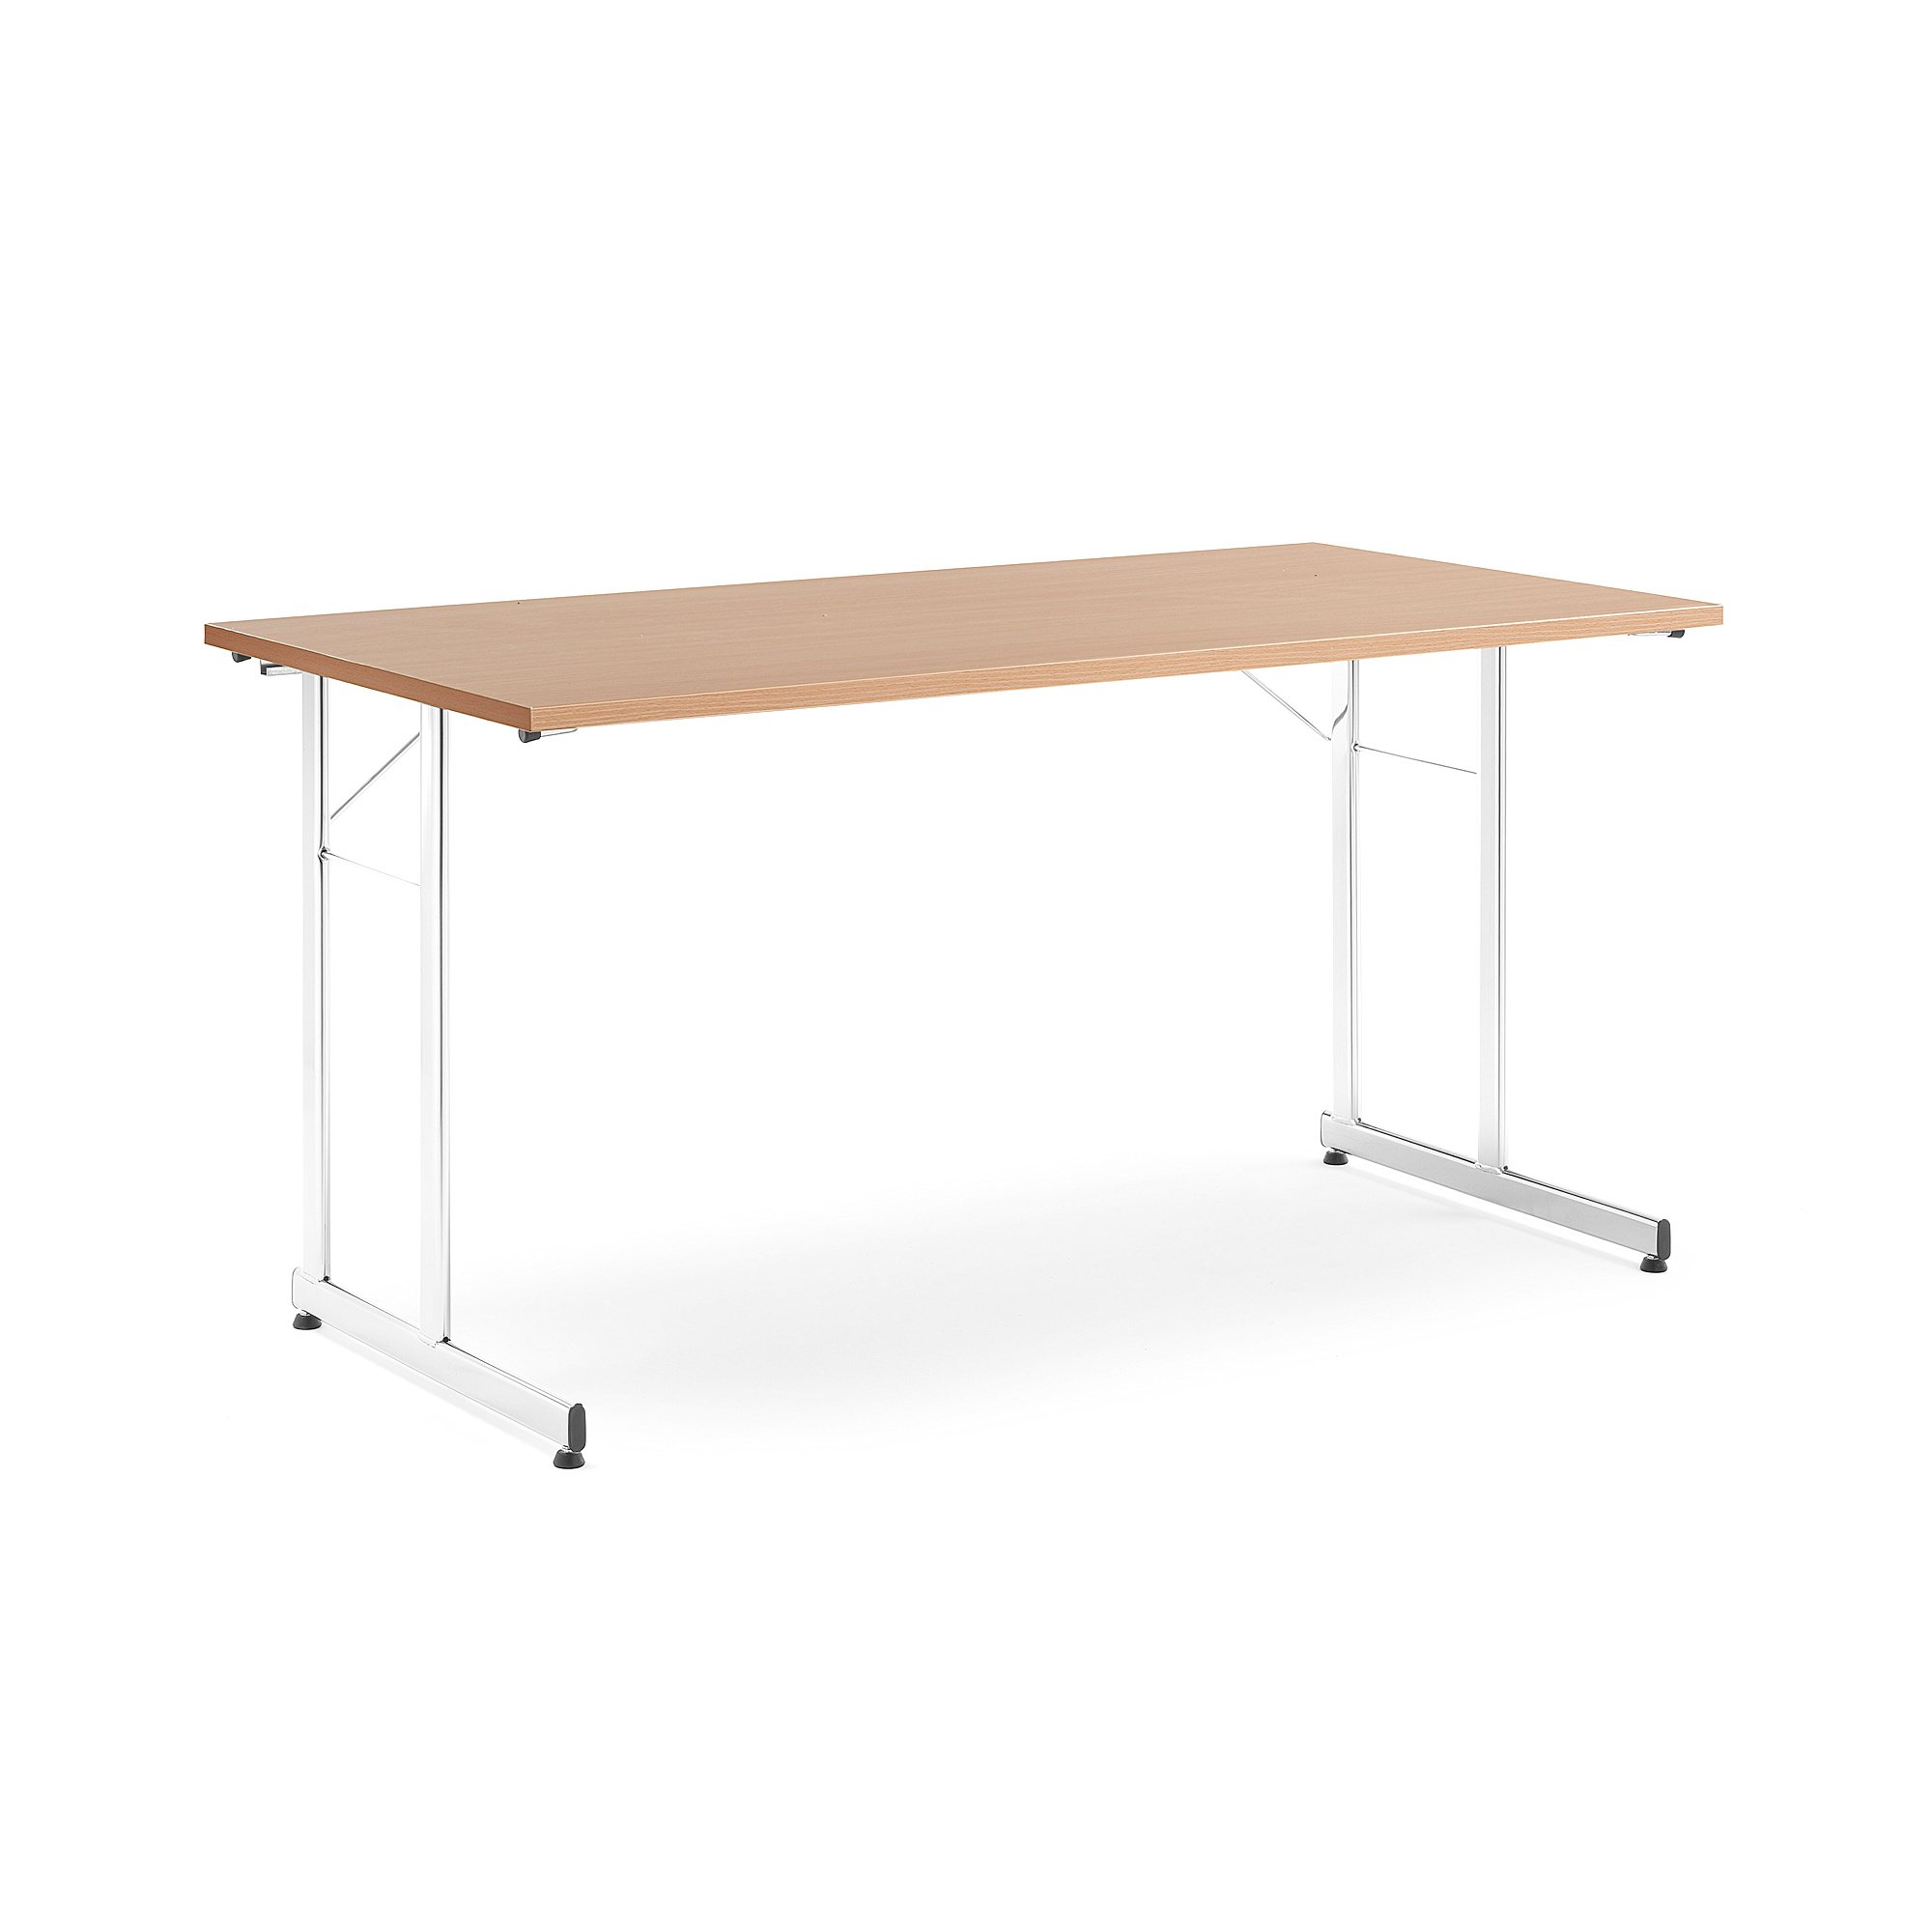 Rokovací stôl Claire, 1400x700 mm, bukový laminát/chróm